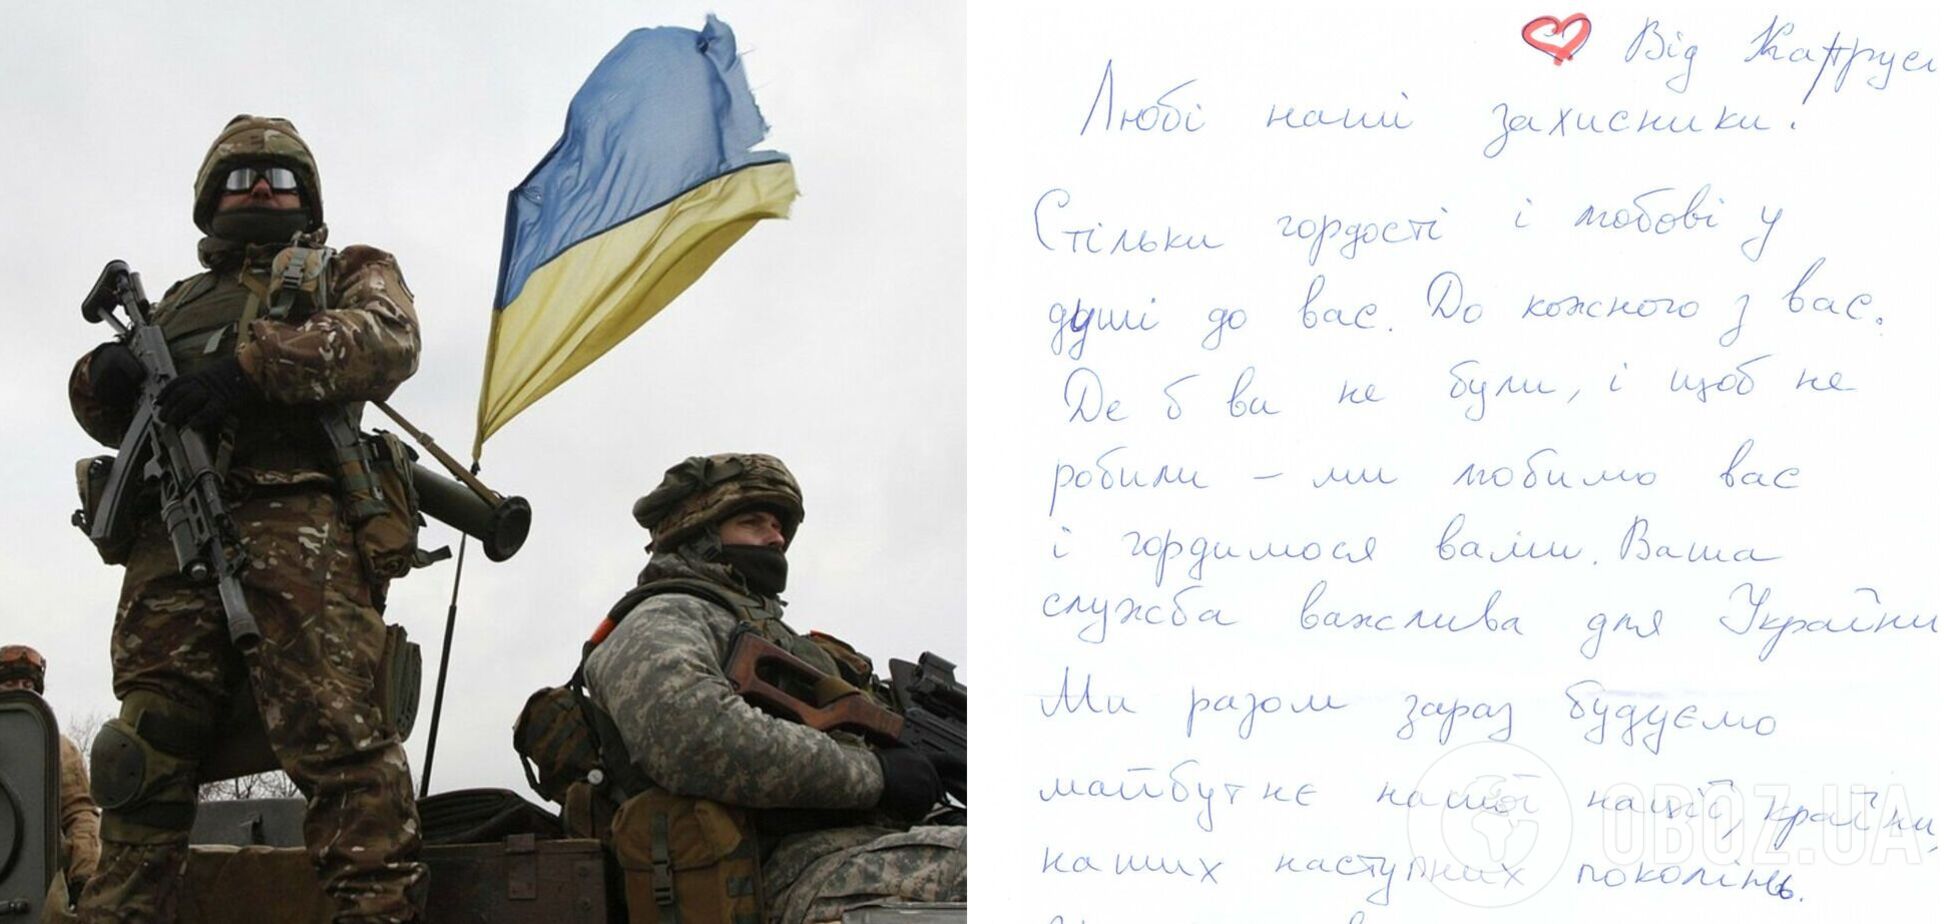 'Мы любим вас, Герои!' Украинские воины поделились трогательным письмом от девочки Кати. Фото